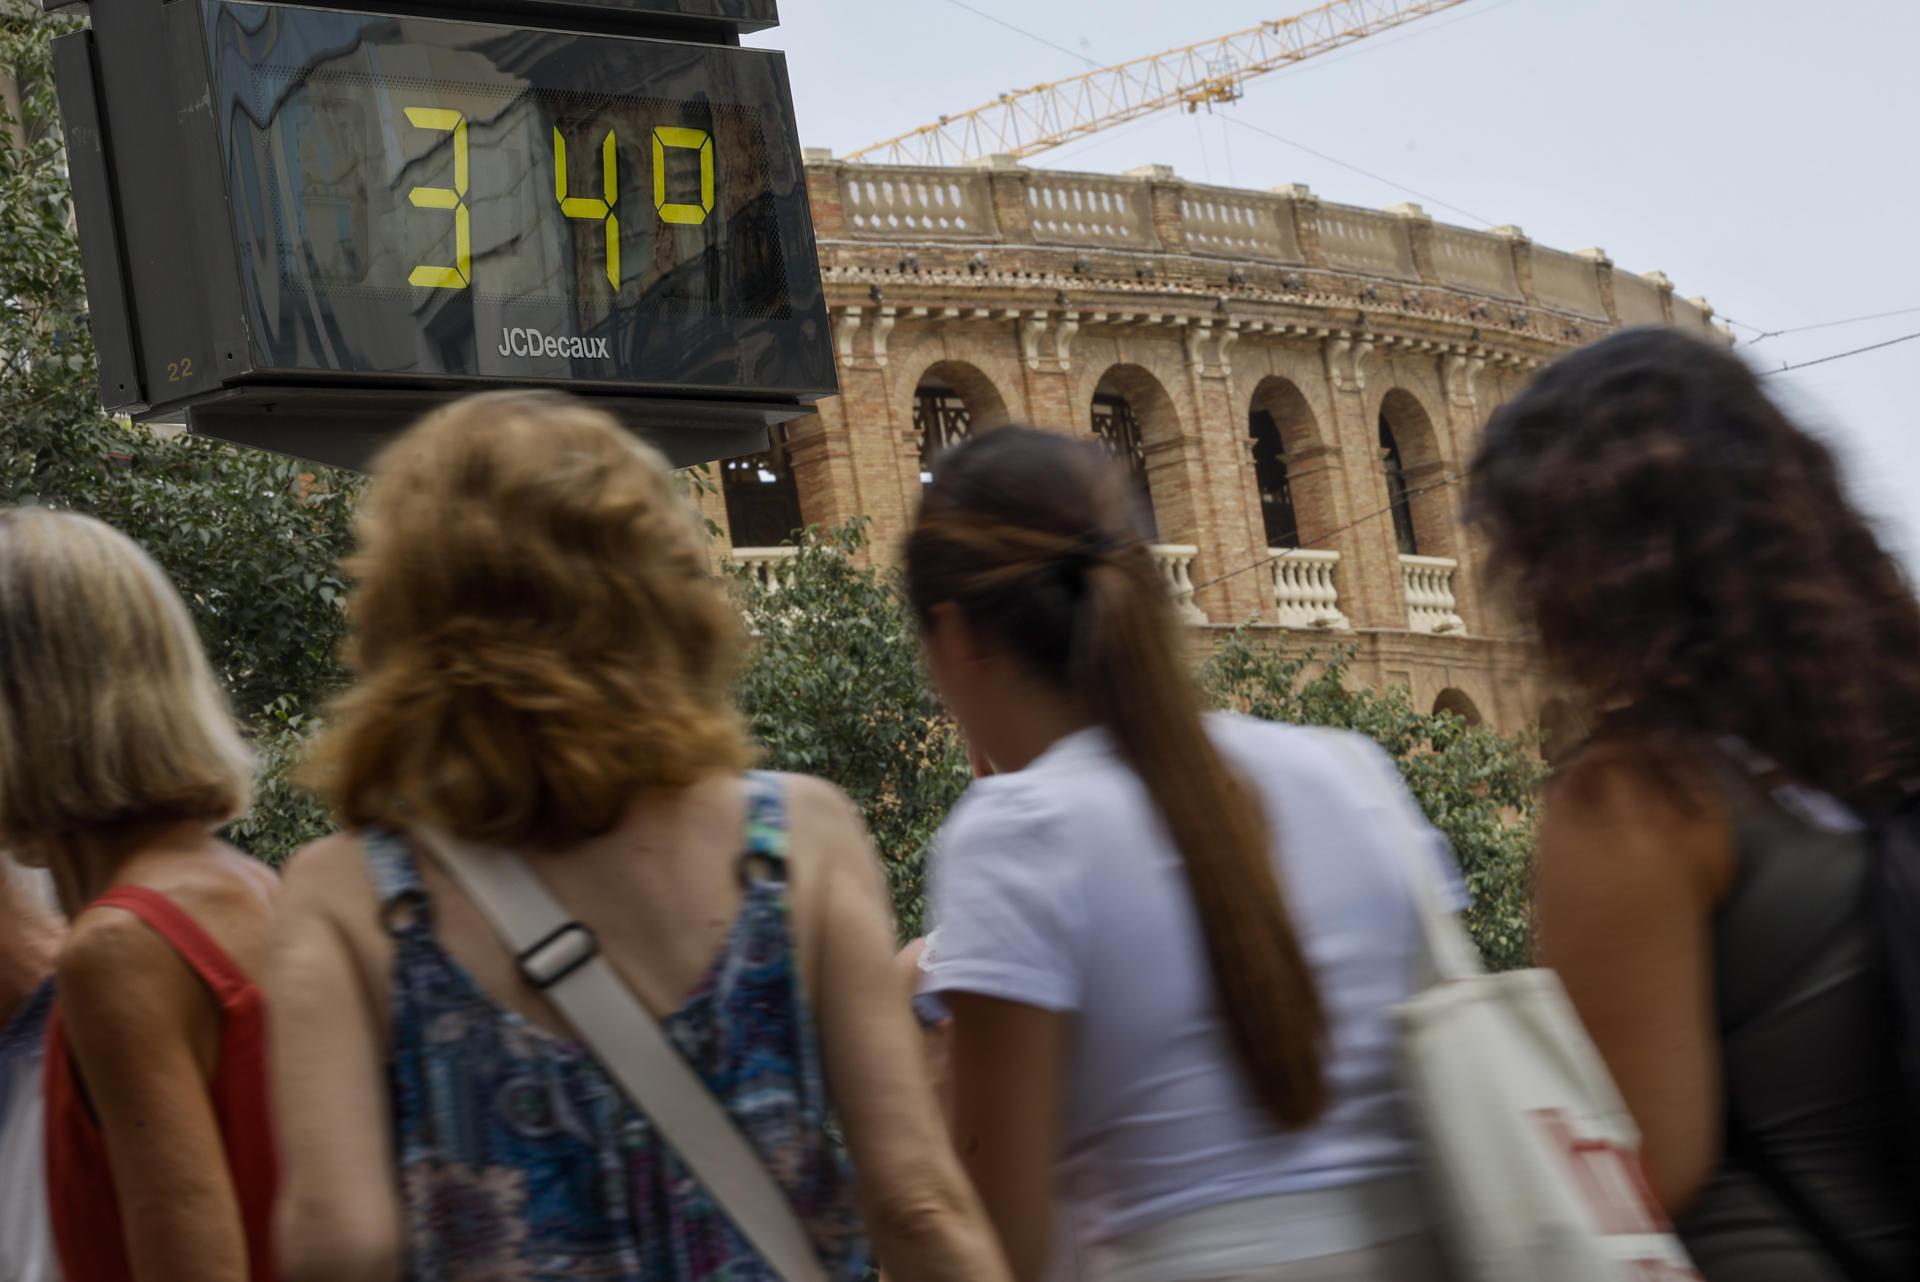 Barcelona arriba als 40 graus, la temperatura més alta en cent deu anys de registres